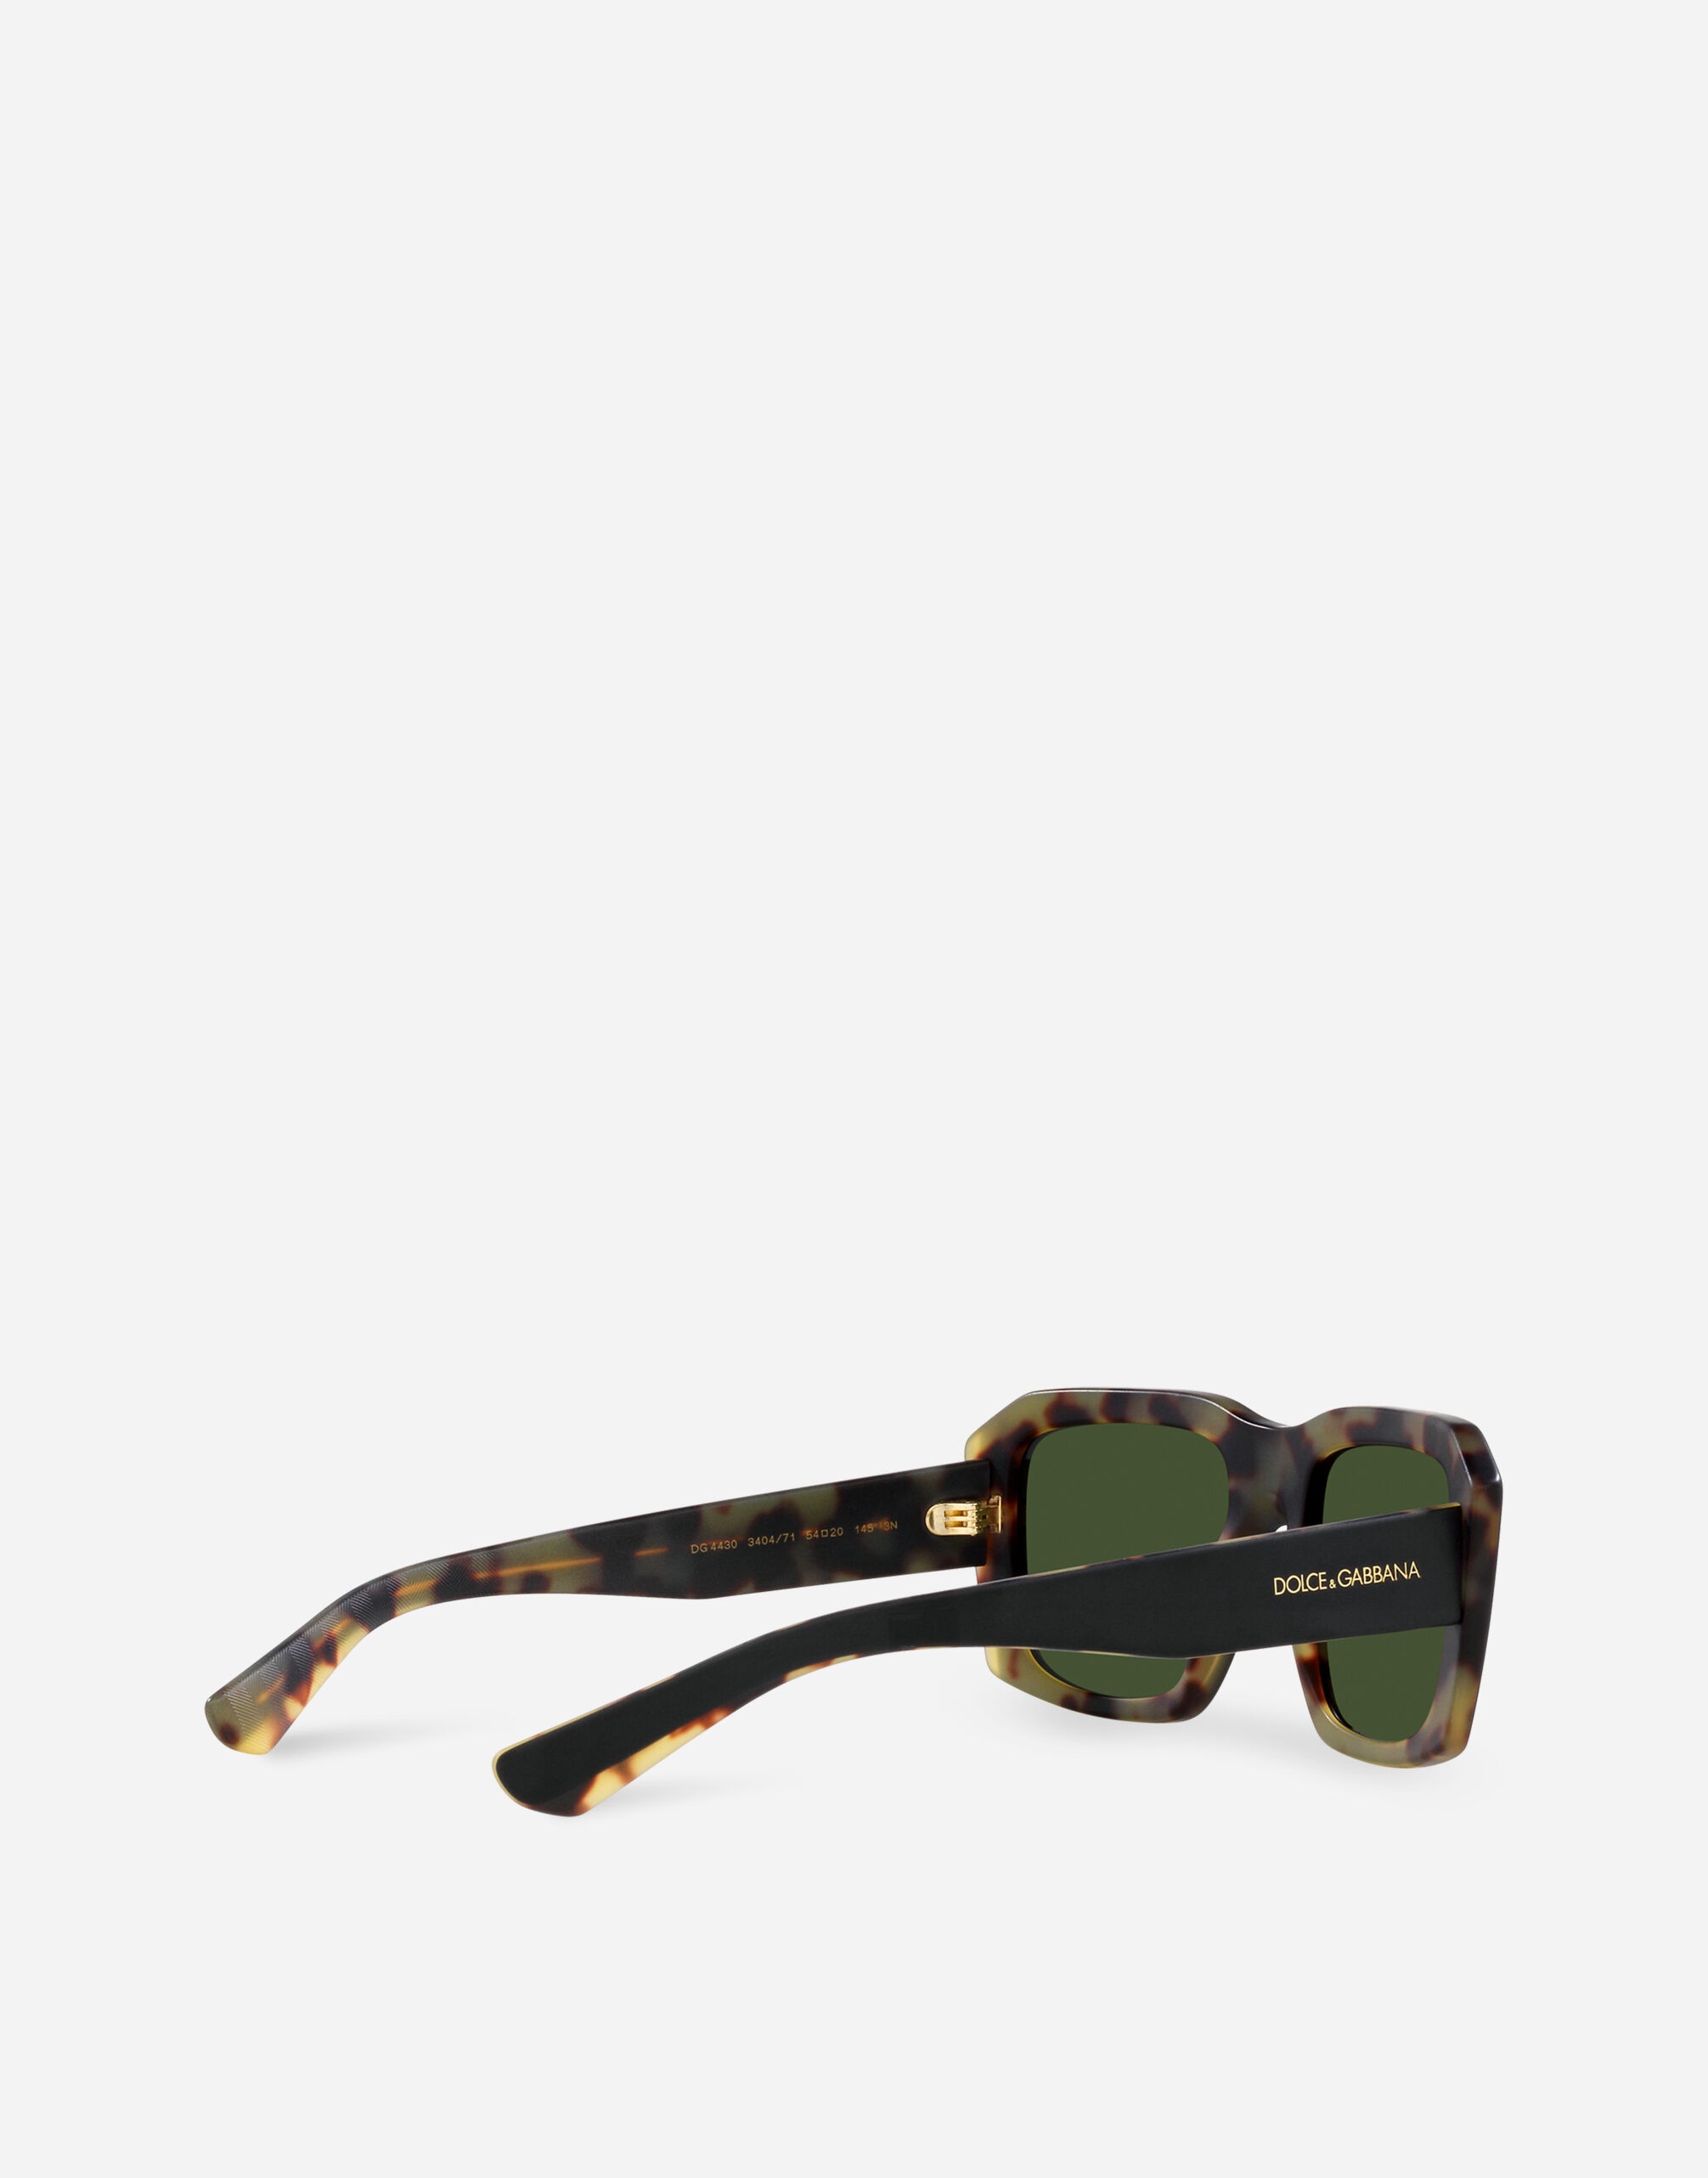 Lusso Sartoriale Sunglasses - 4